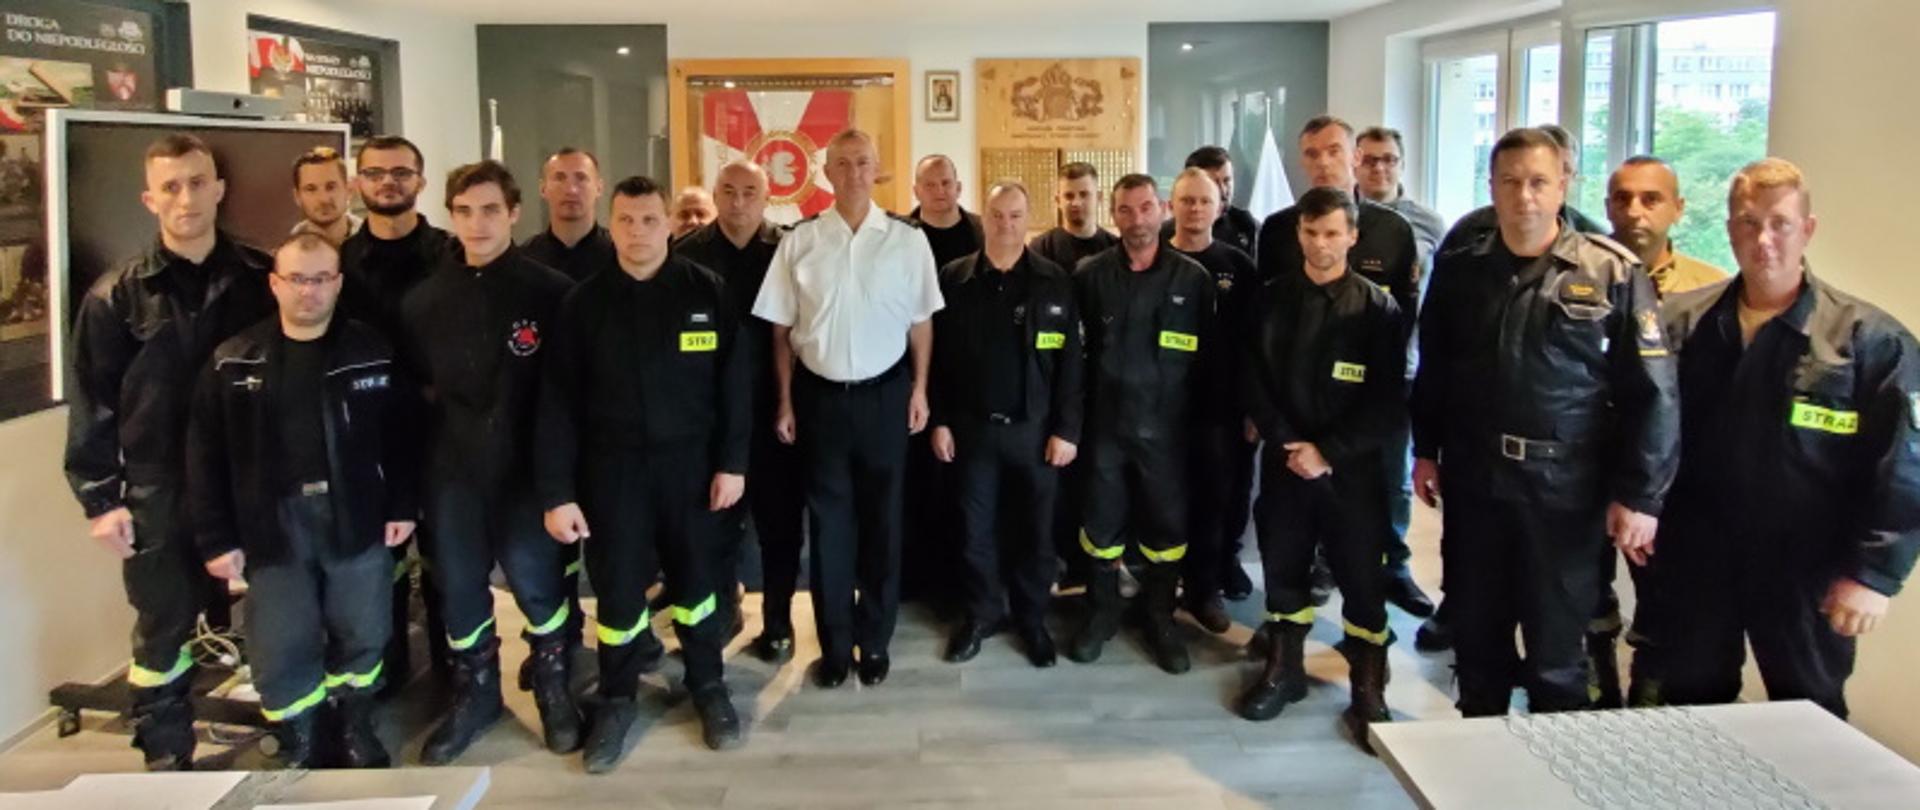 Absolwenci szkolenia na Naczelników Ochotniczych Straży Pożarnych przeprowadzanego w Stalowej Woli